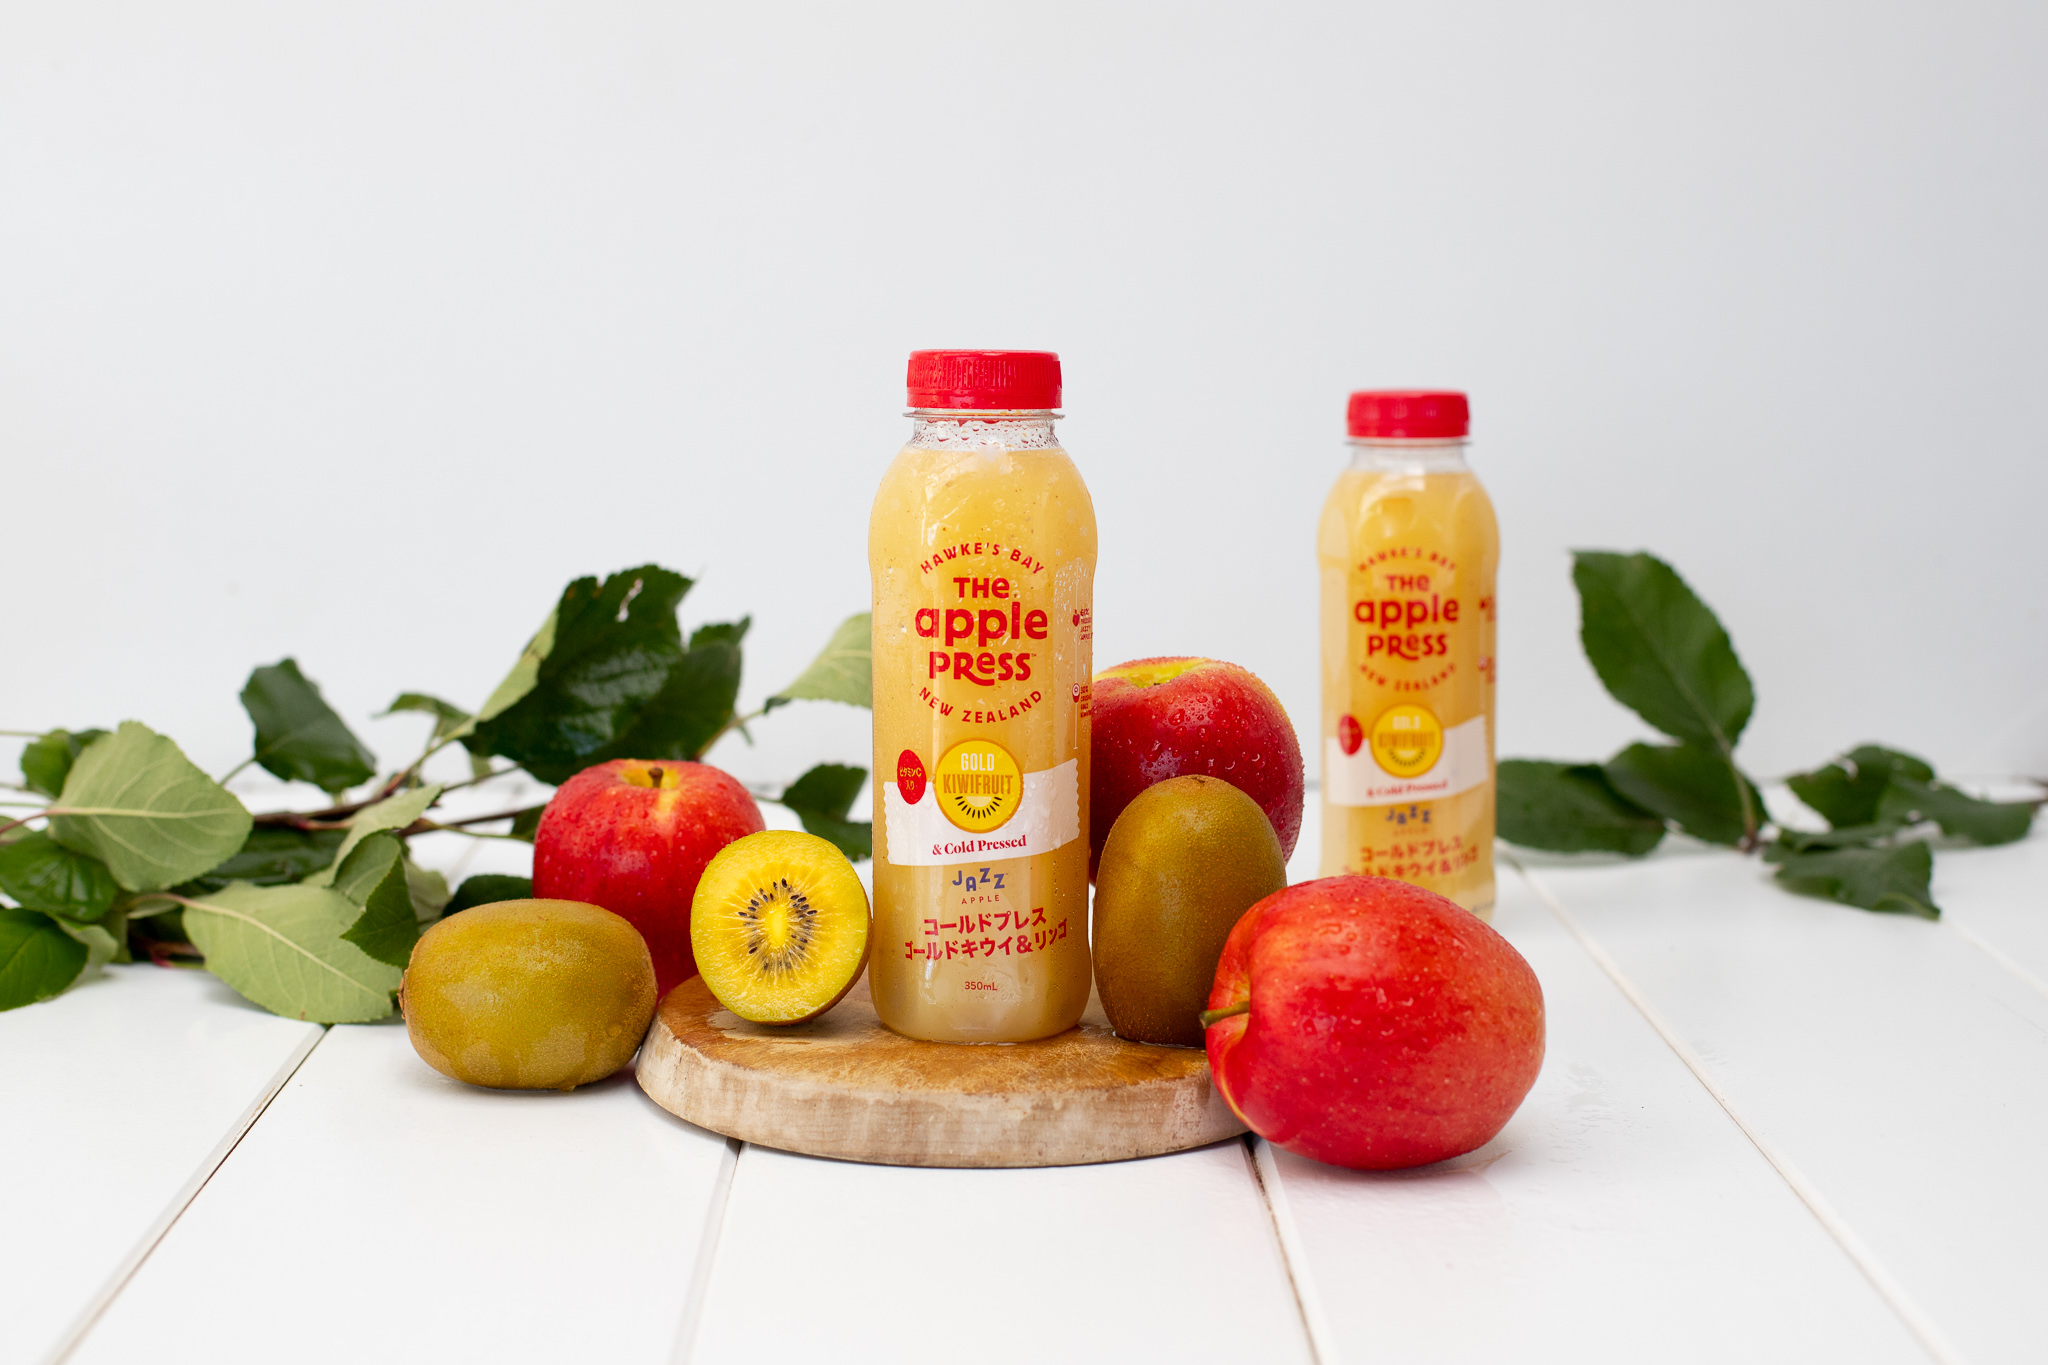 年新物コールドプレス製法のゴールドキウイ Jazzリンゴのミックスジュース発売開始 株式会社アイズは輸入野菜 果物を取り扱っている企業です